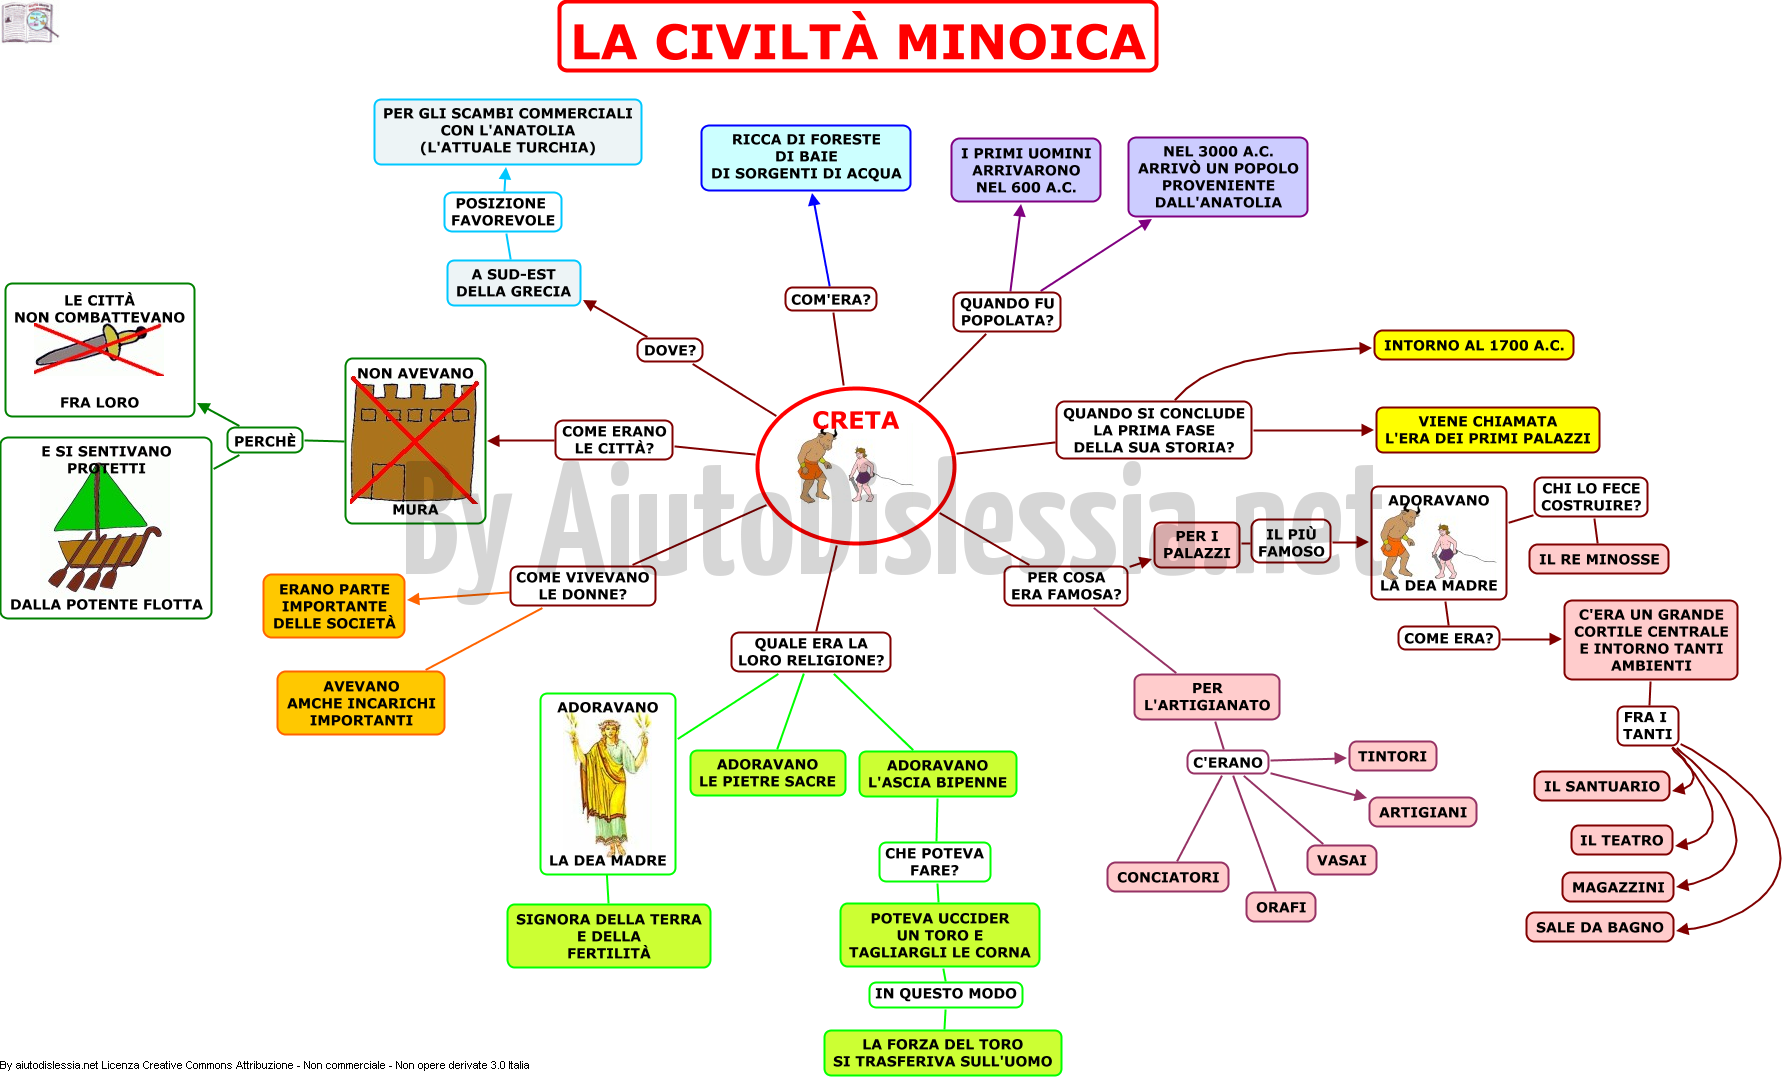 03.-LA-CIVILTA-MINOICA-mappa-facilitata